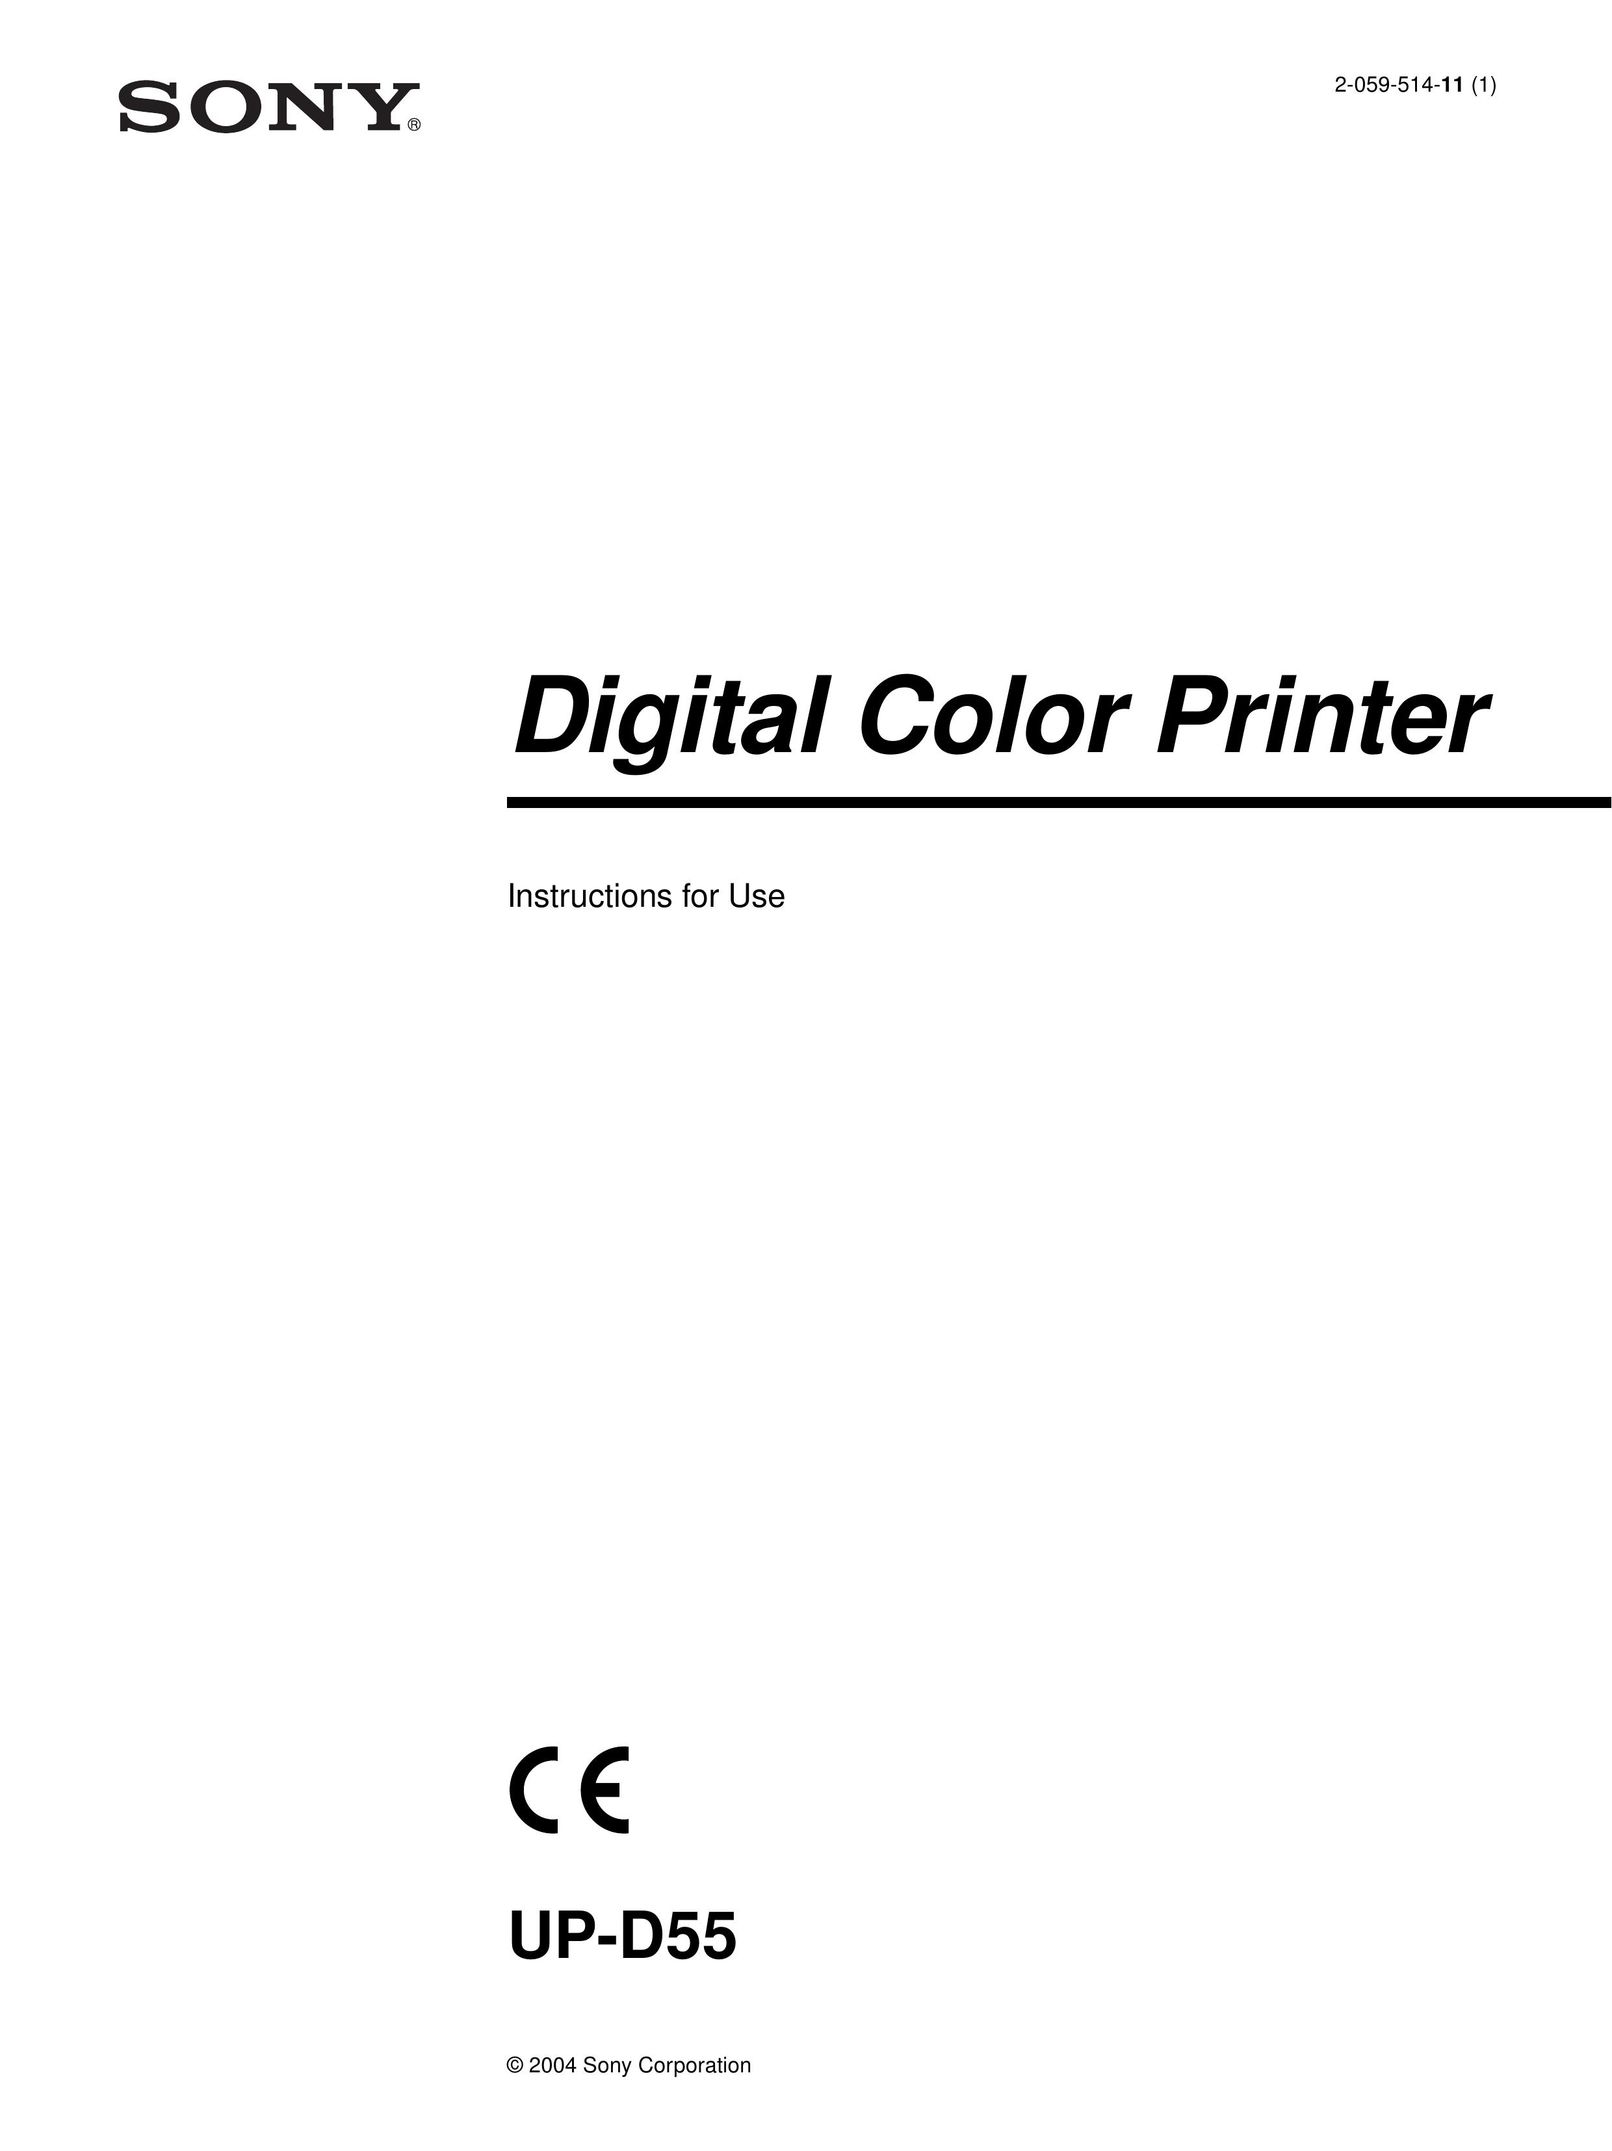 Belkin UP-D55 Printer User Manual